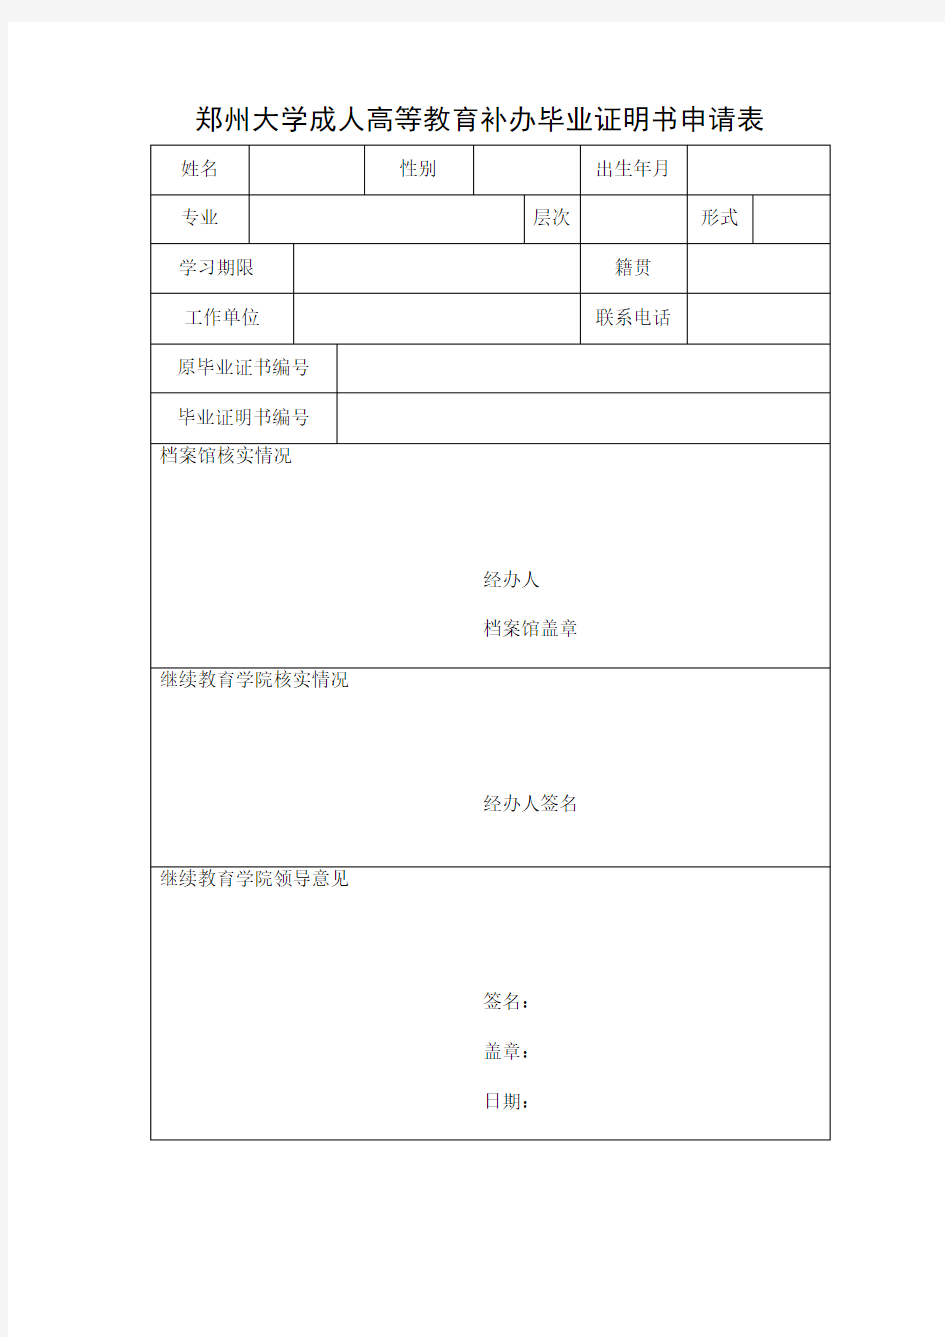 郑州大学成人高等教育补办毕业证明书申请表